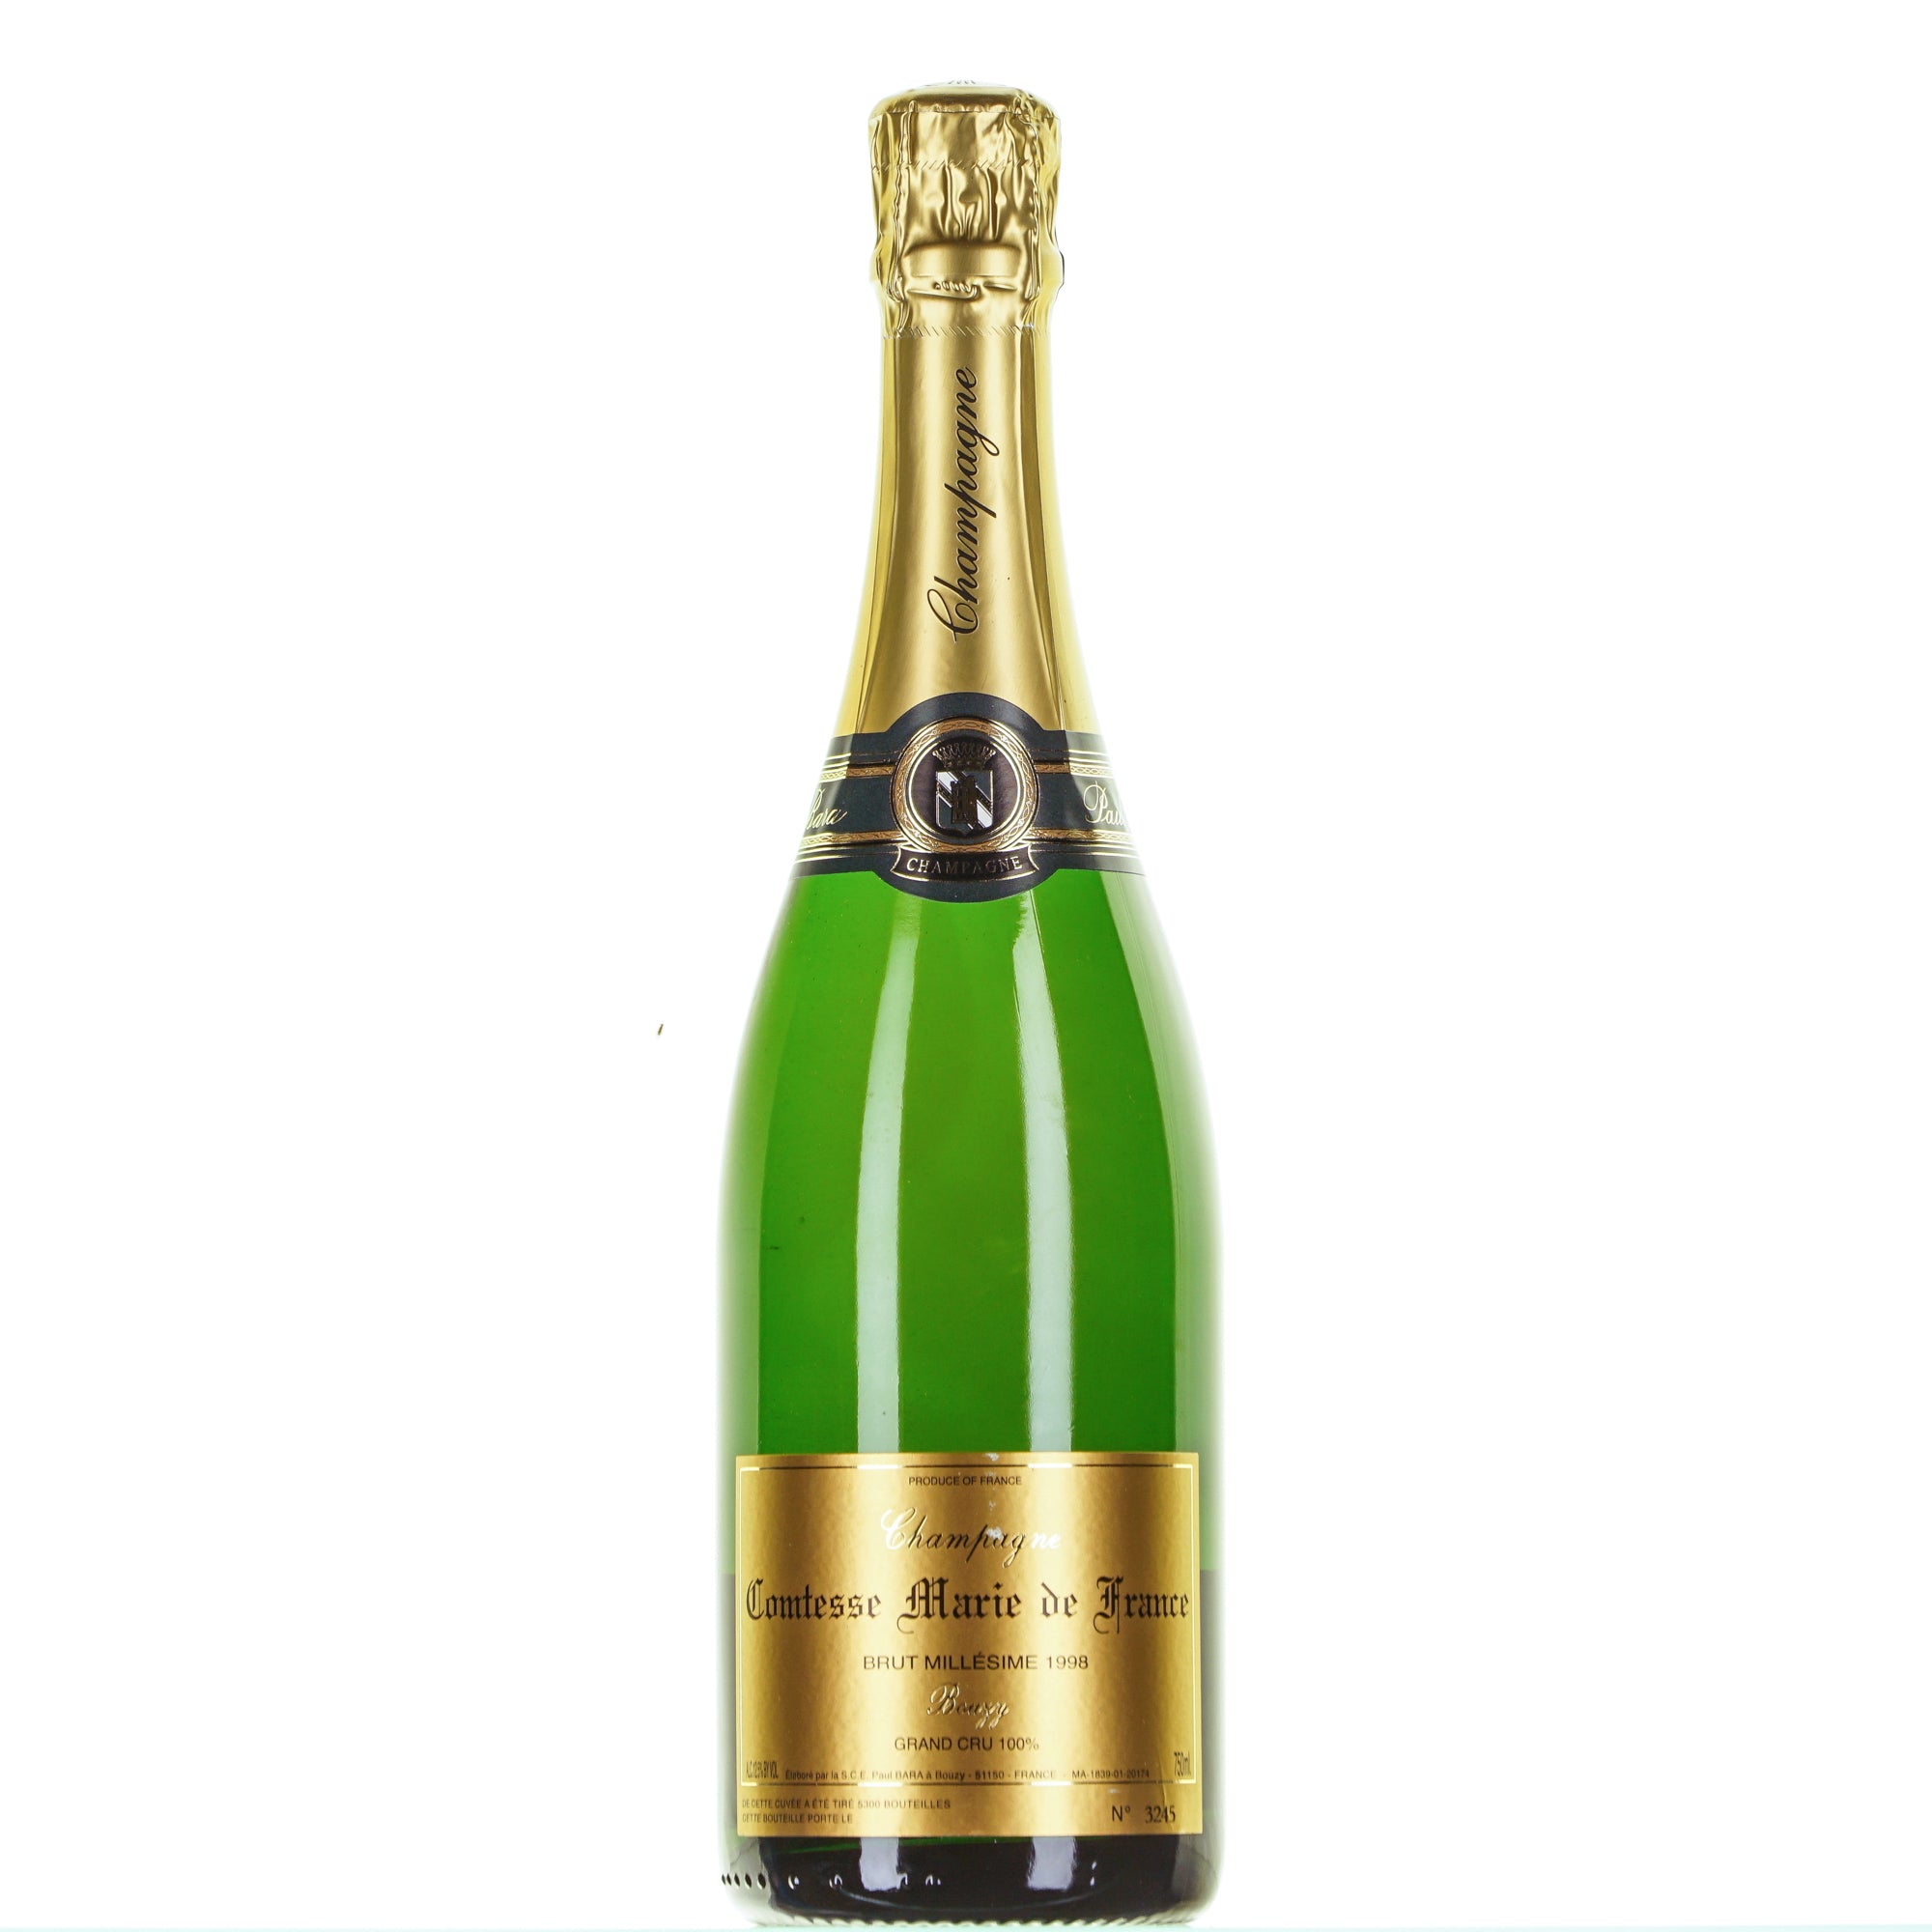 Champagne Comtesse Marie de France 1998 Grand Cru Paul Bara lt.0,750